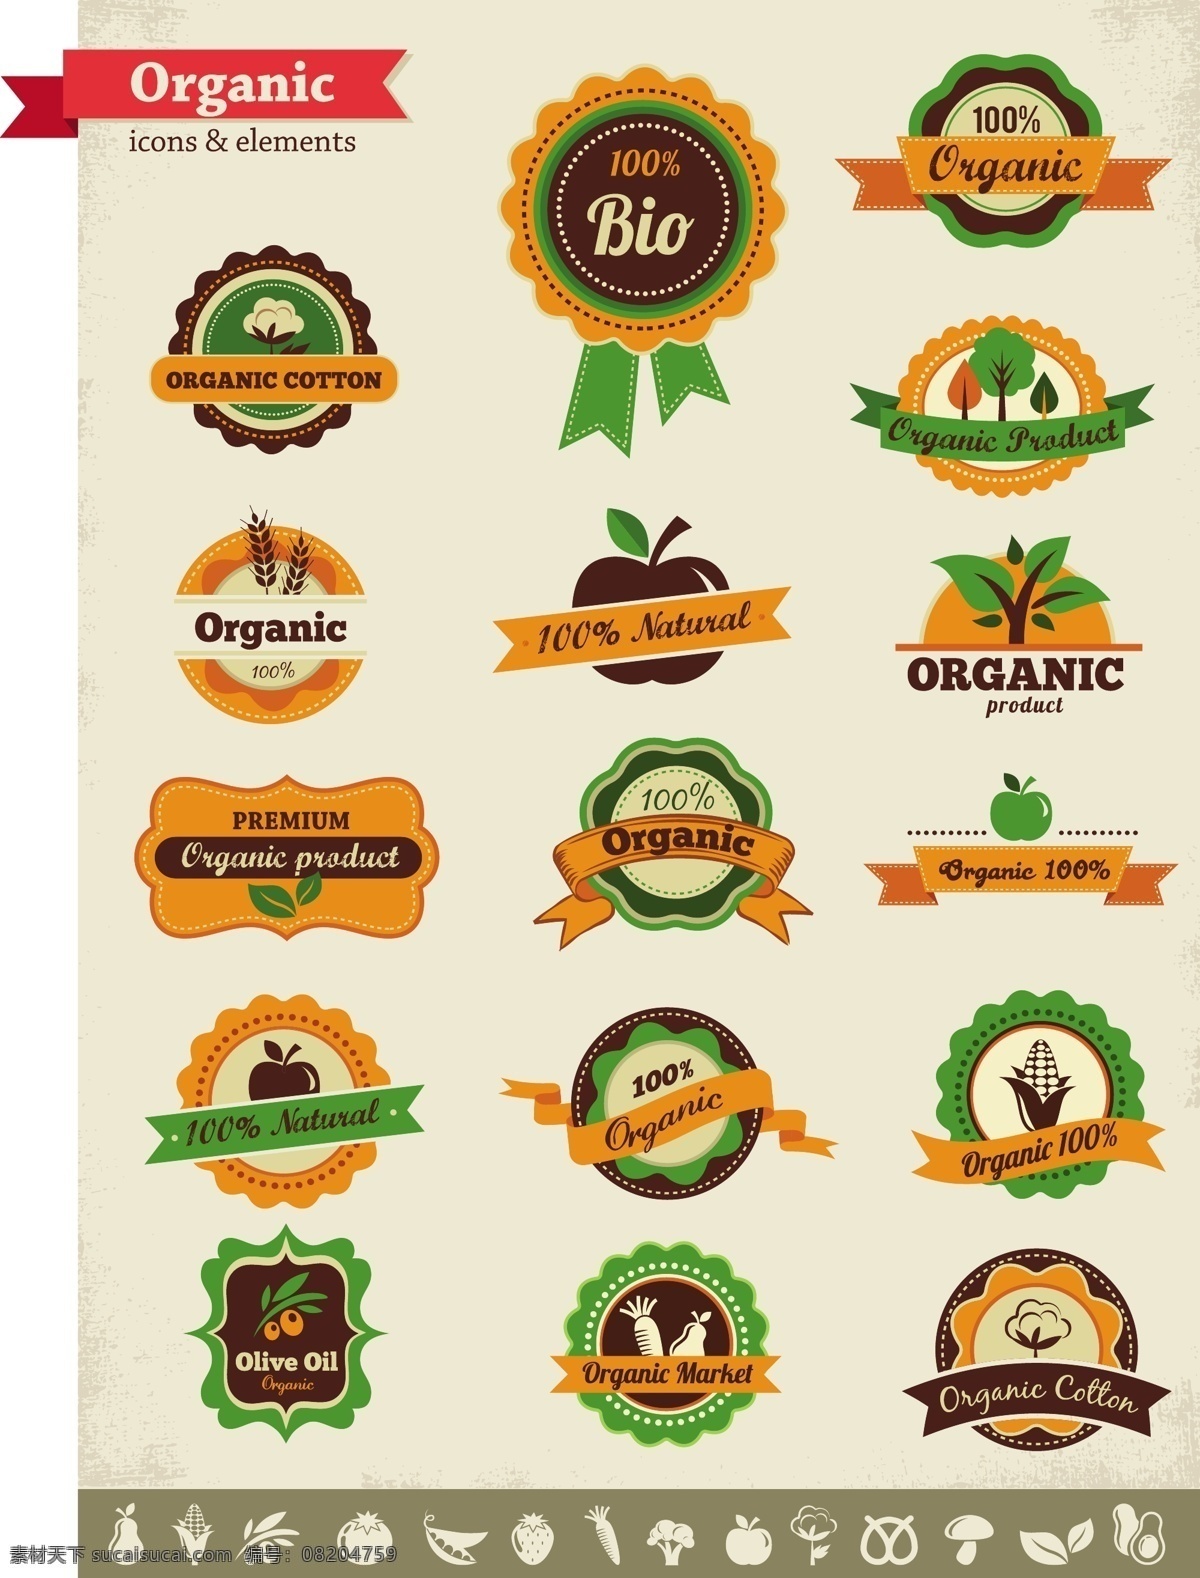 标签设计 徽章 麦穗 棉花 苹果 树木 玉米 装饰丝带 有机 产品 标签 矢量 有机产品 有机物 标贴 免费 海报 其他海报设计